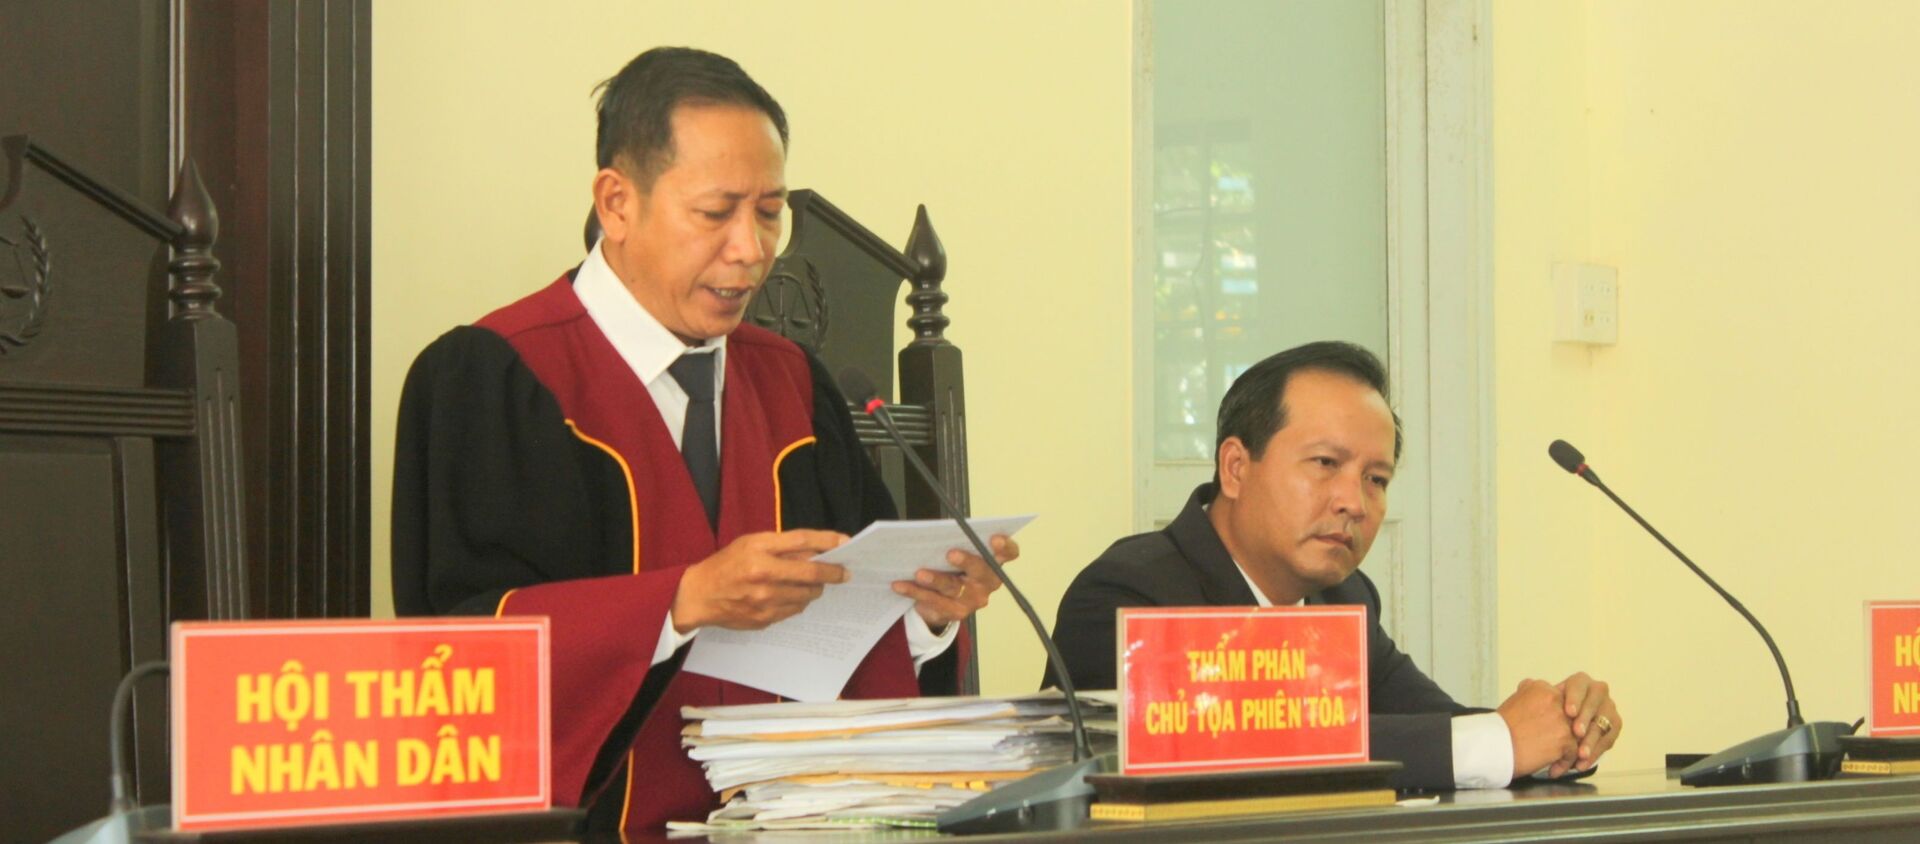 Phiên tòa xét xử hai cựu công an Cần Thơ - Sputnik Việt Nam, 1920, 10.07.2019